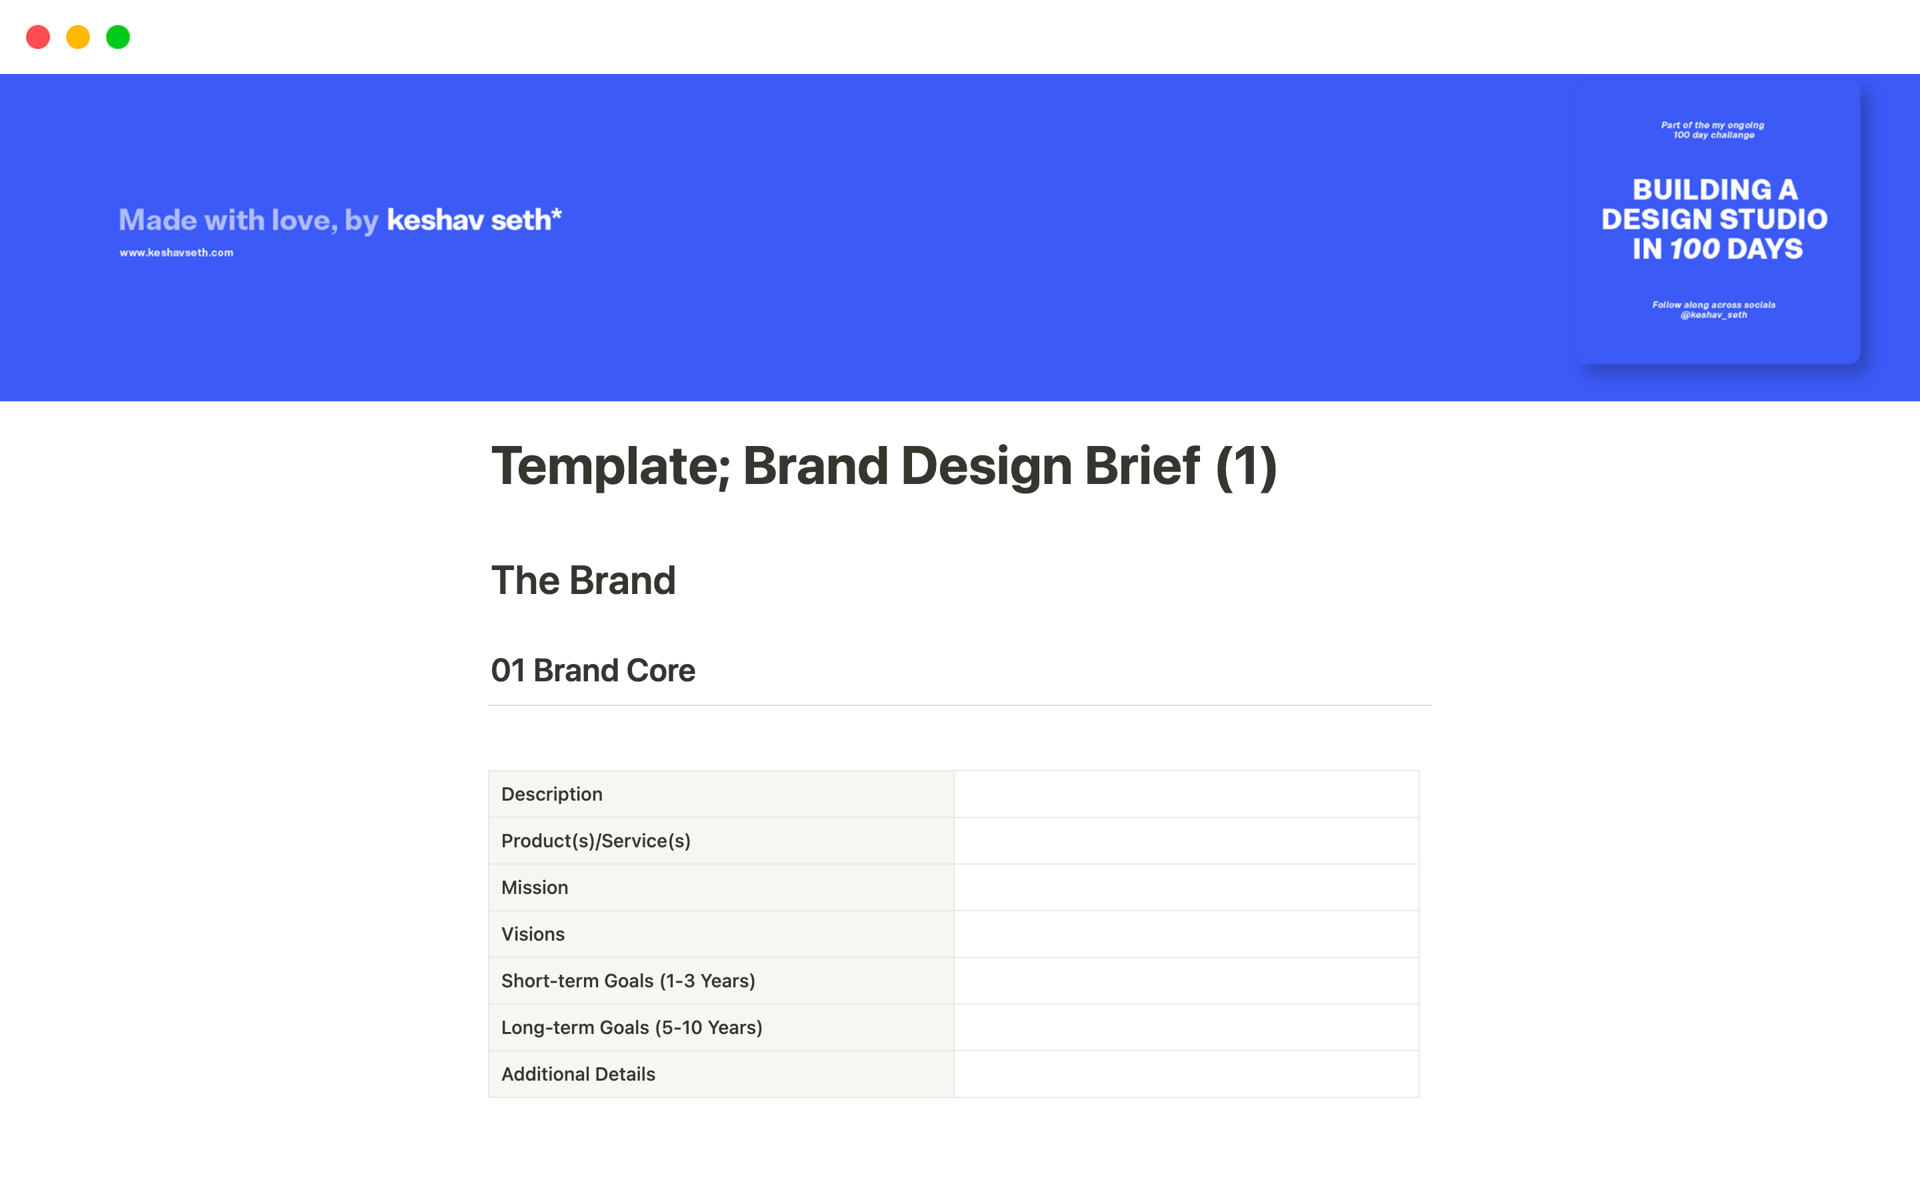 Uma prévia do modelo para Brand Design Brief